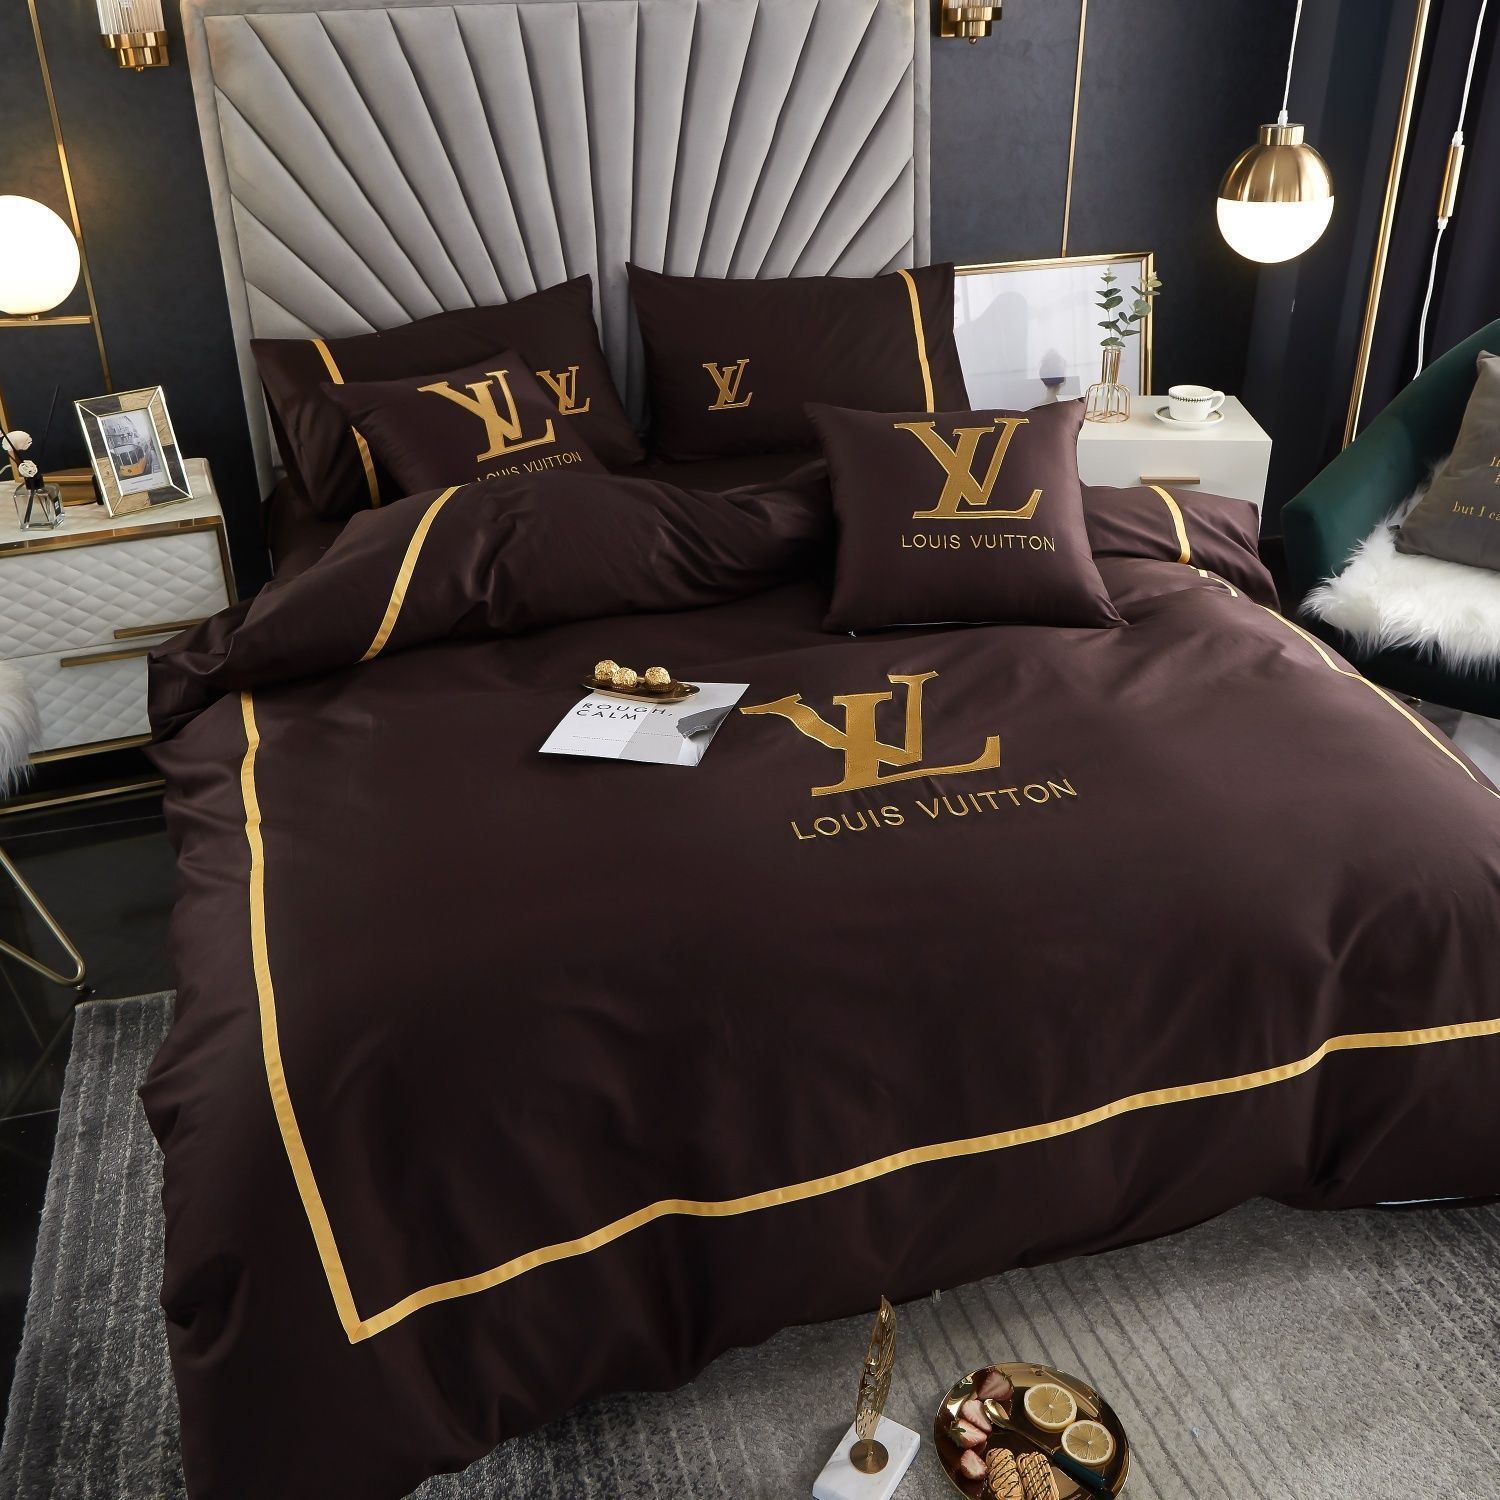 Lv type 191 bedding sets duvet cover lv bedroom sets luxury brand bedding - set 4 pcs (1 duvet cover + 1 bed sheet + 2 pillowcases) / king